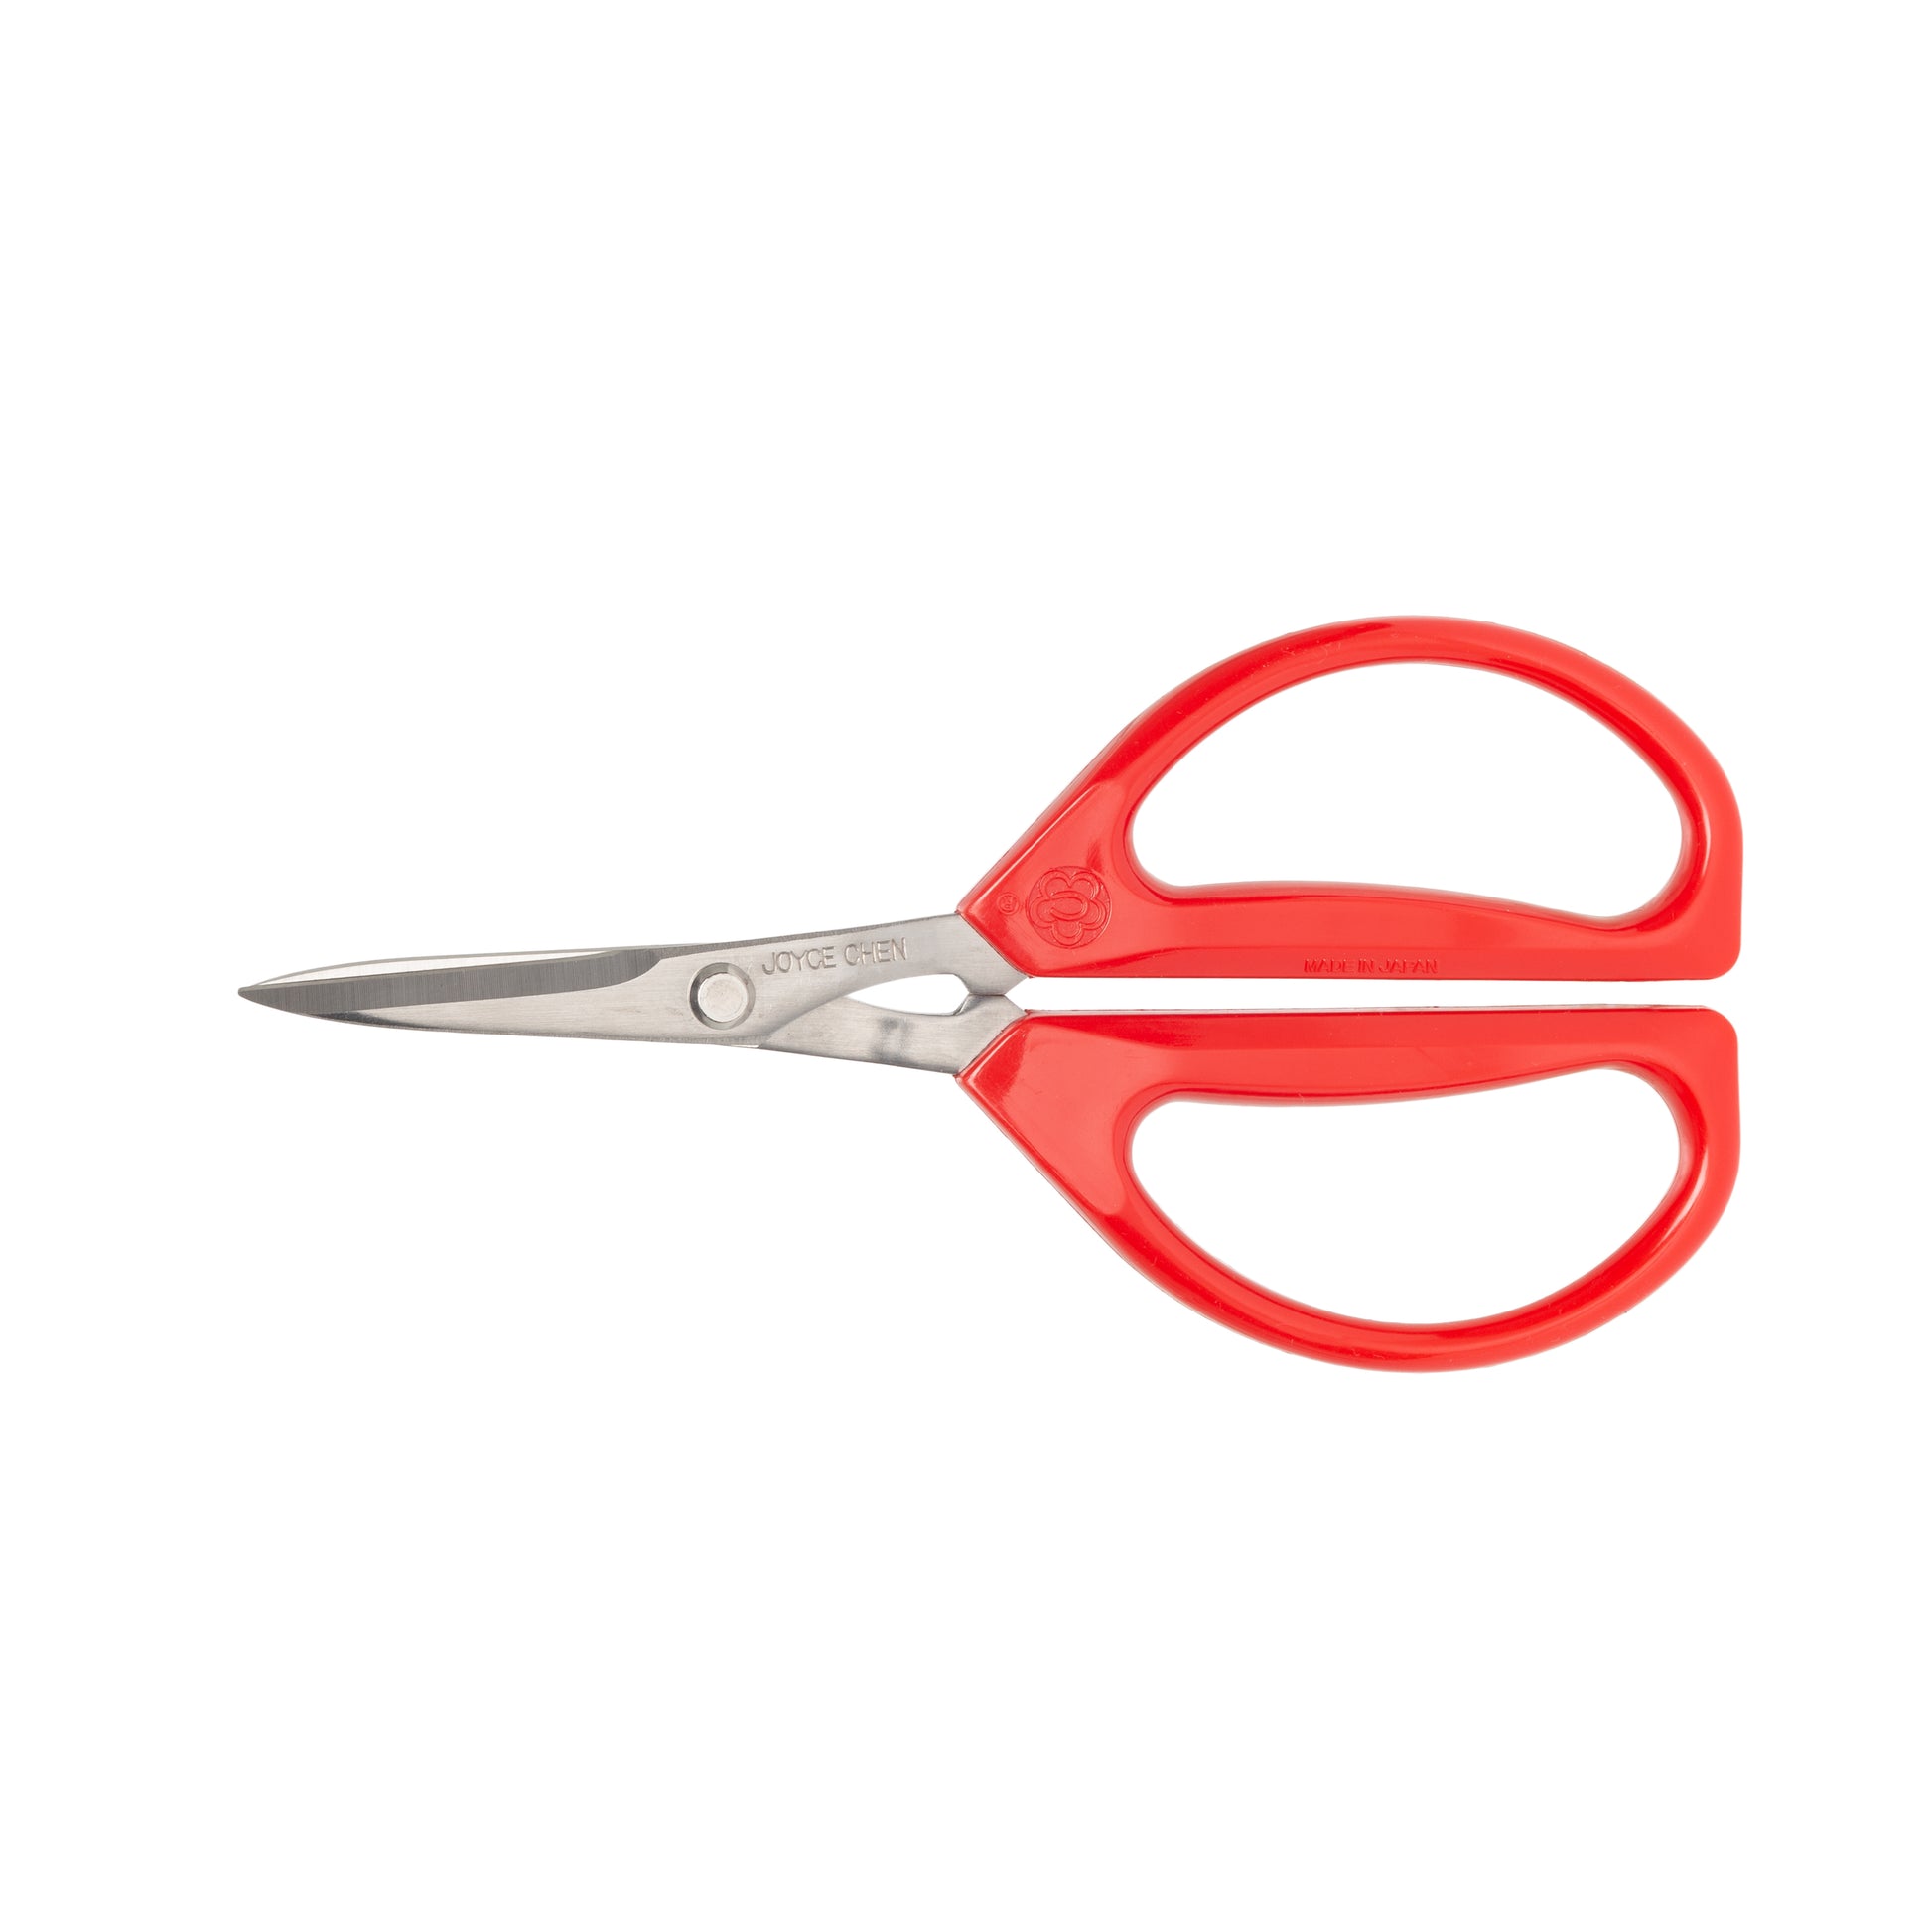 Joyjolt Kitchen Shears Heavy Duty Scissors With Sheaths - Set Of 2 Utility  Scissors Orange/purple : Target